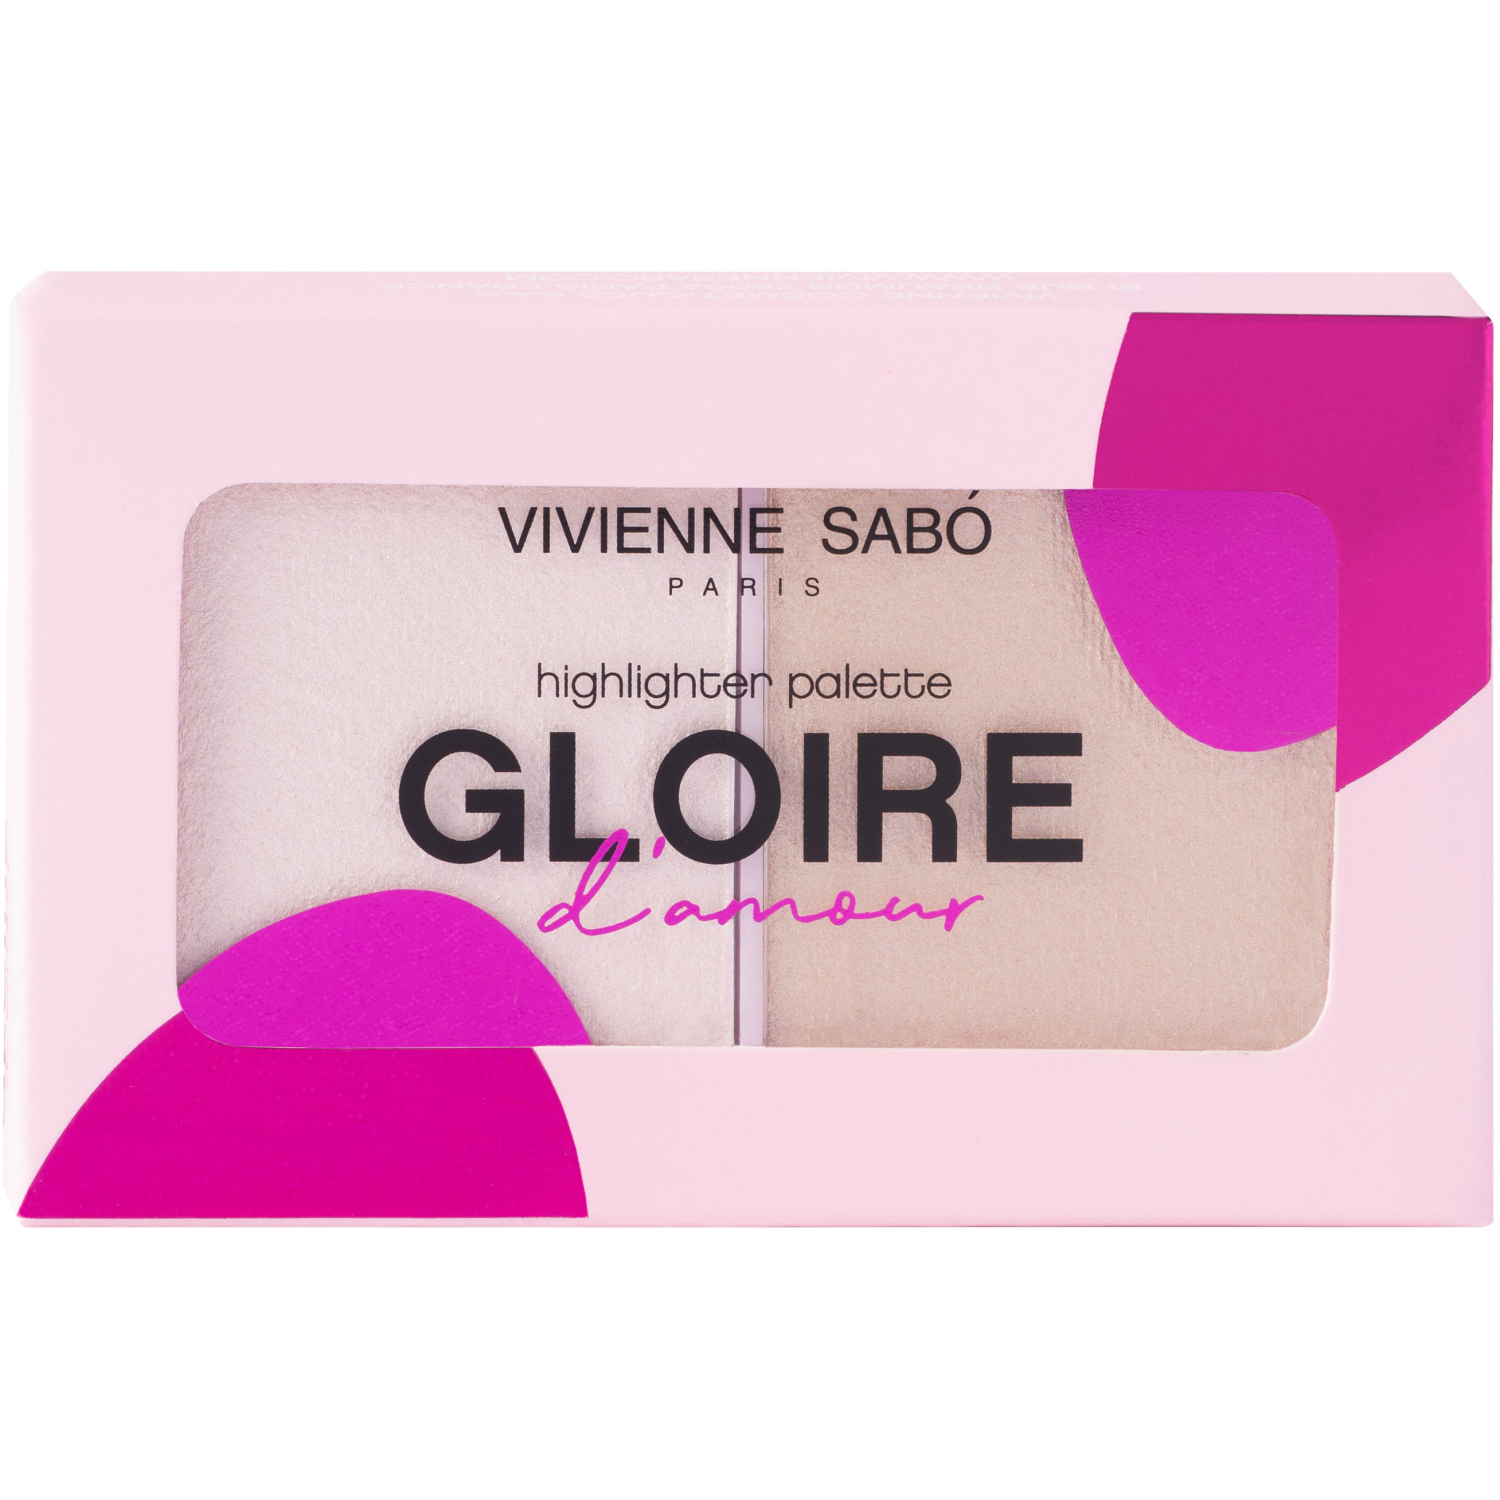 Палетка хайлайтеров Vivienne Sabo Gloire d'amour, текстура с высоким содержанием светоотражающих частиц, тон 01, светло-розовый, 6гр.